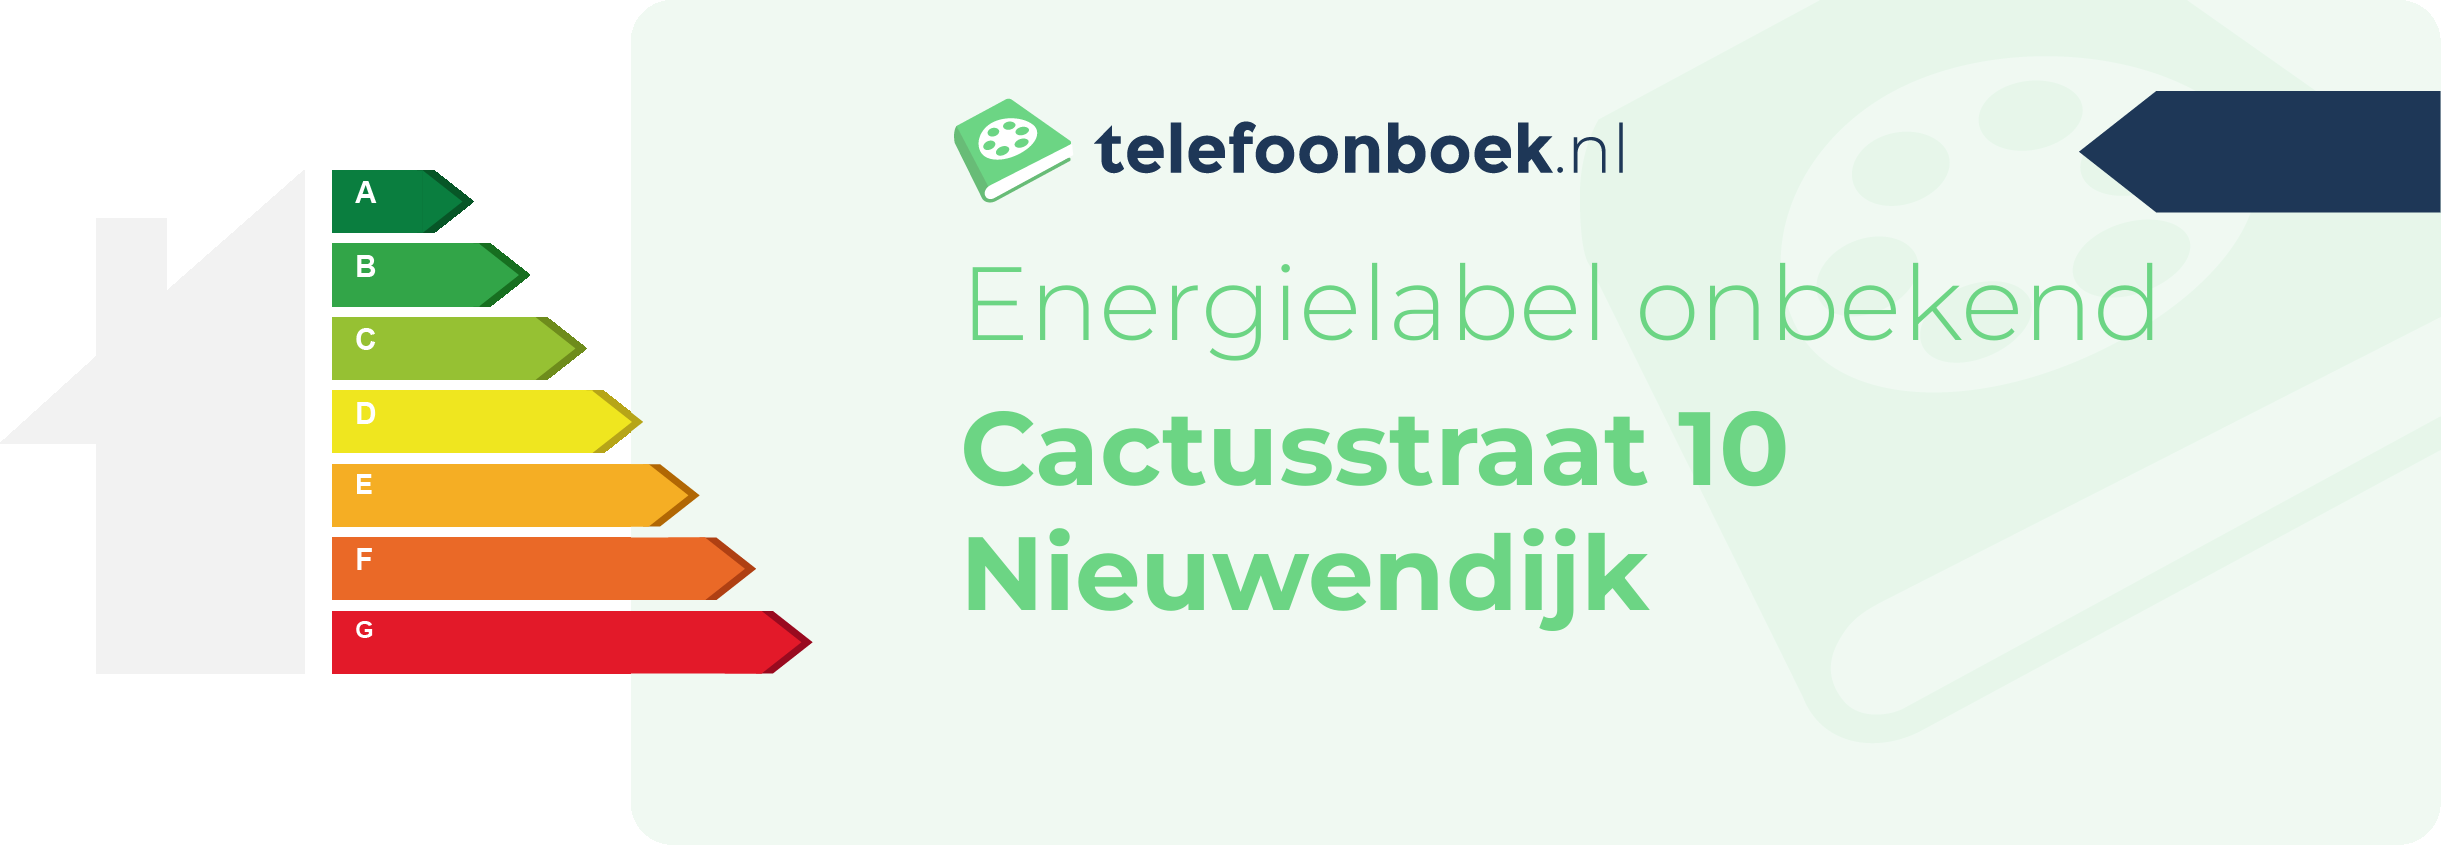 Energielabel Cactusstraat 10 Nieuwendijk